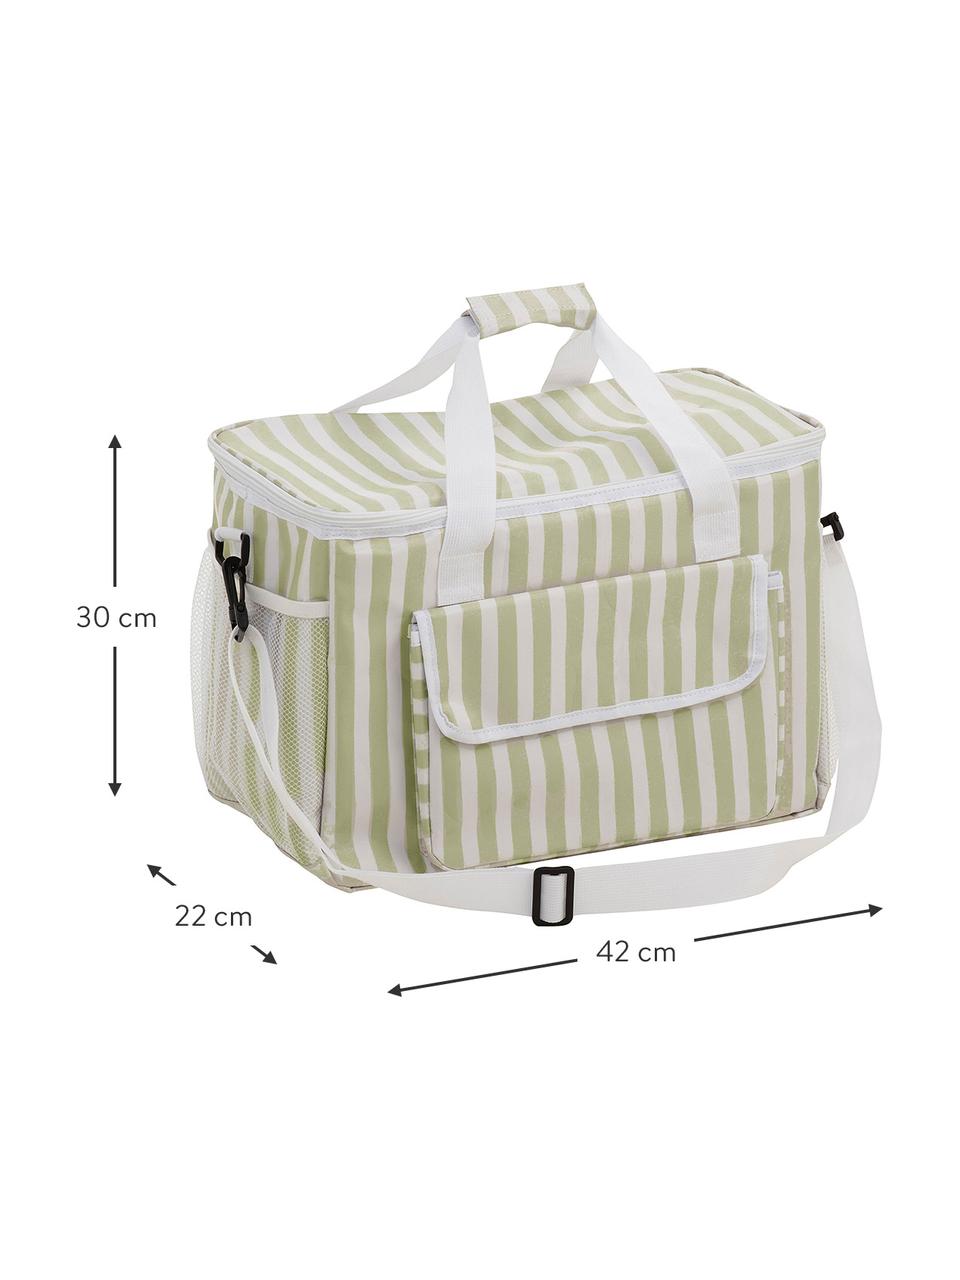 Picknick-Kühltasche Clair, Bezug: Polyester, Beige, gebrochenes Weiß, B 42 x H 30 cm